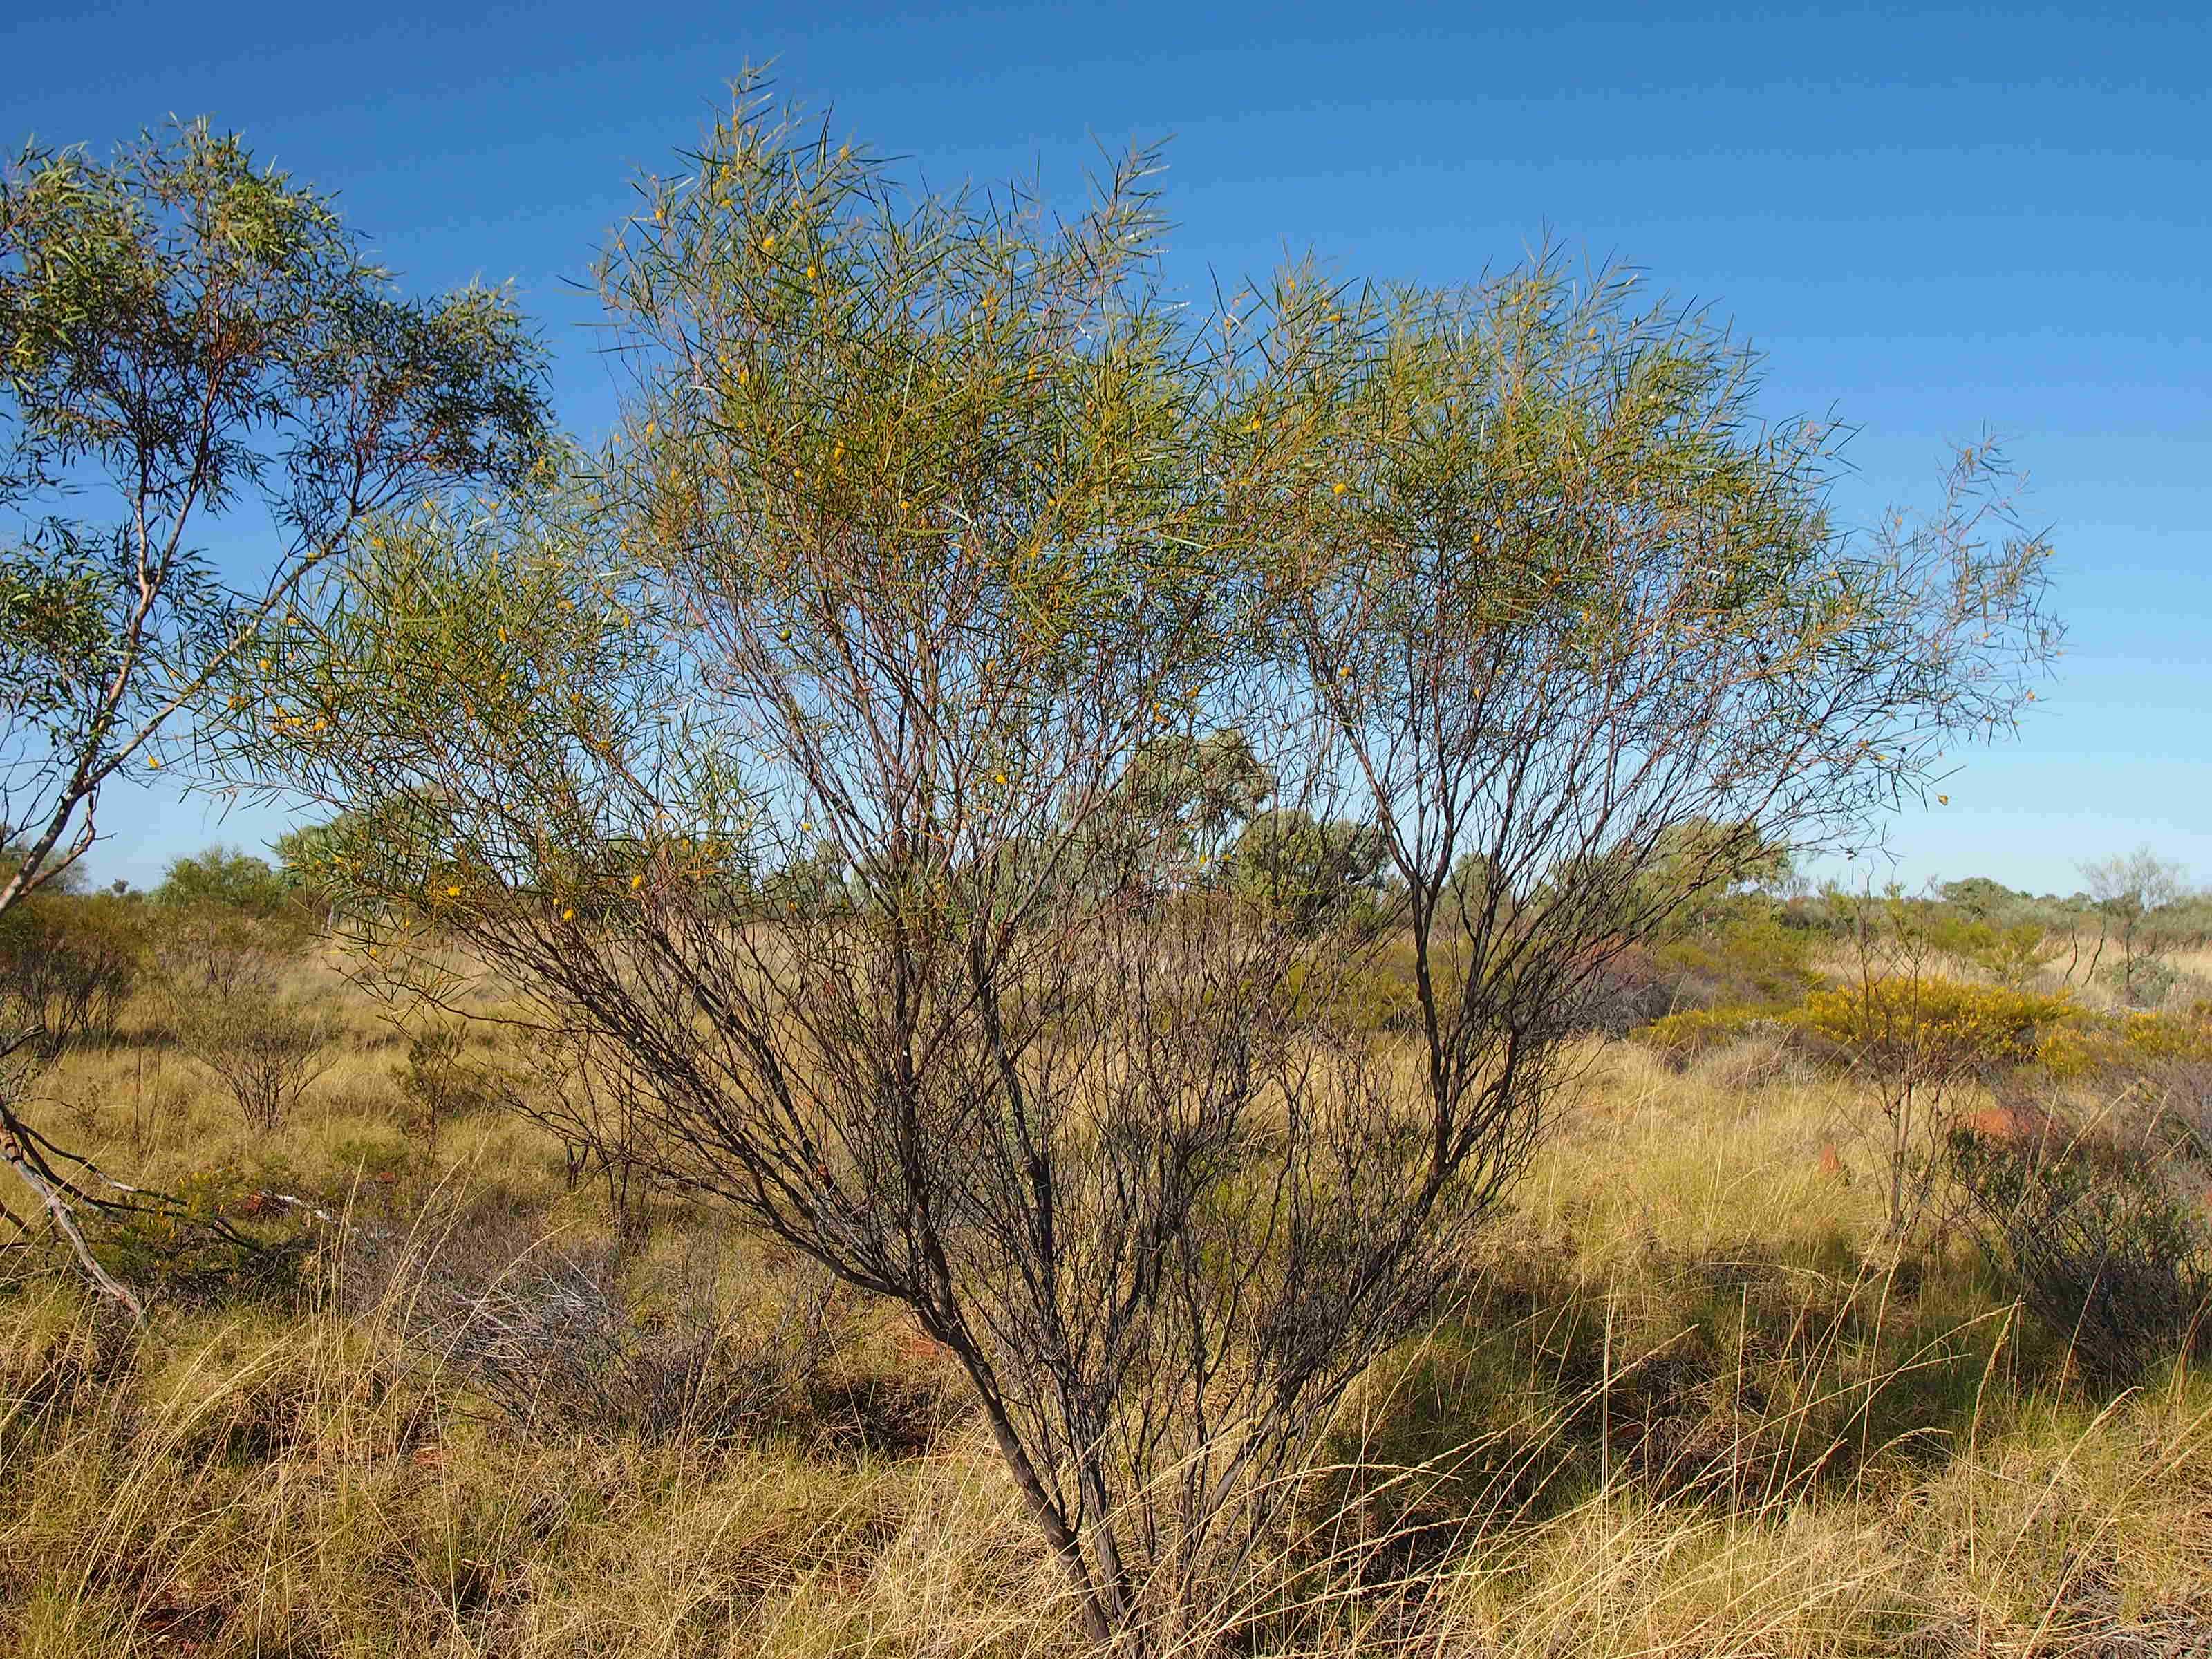 Image of an Acacia Tree